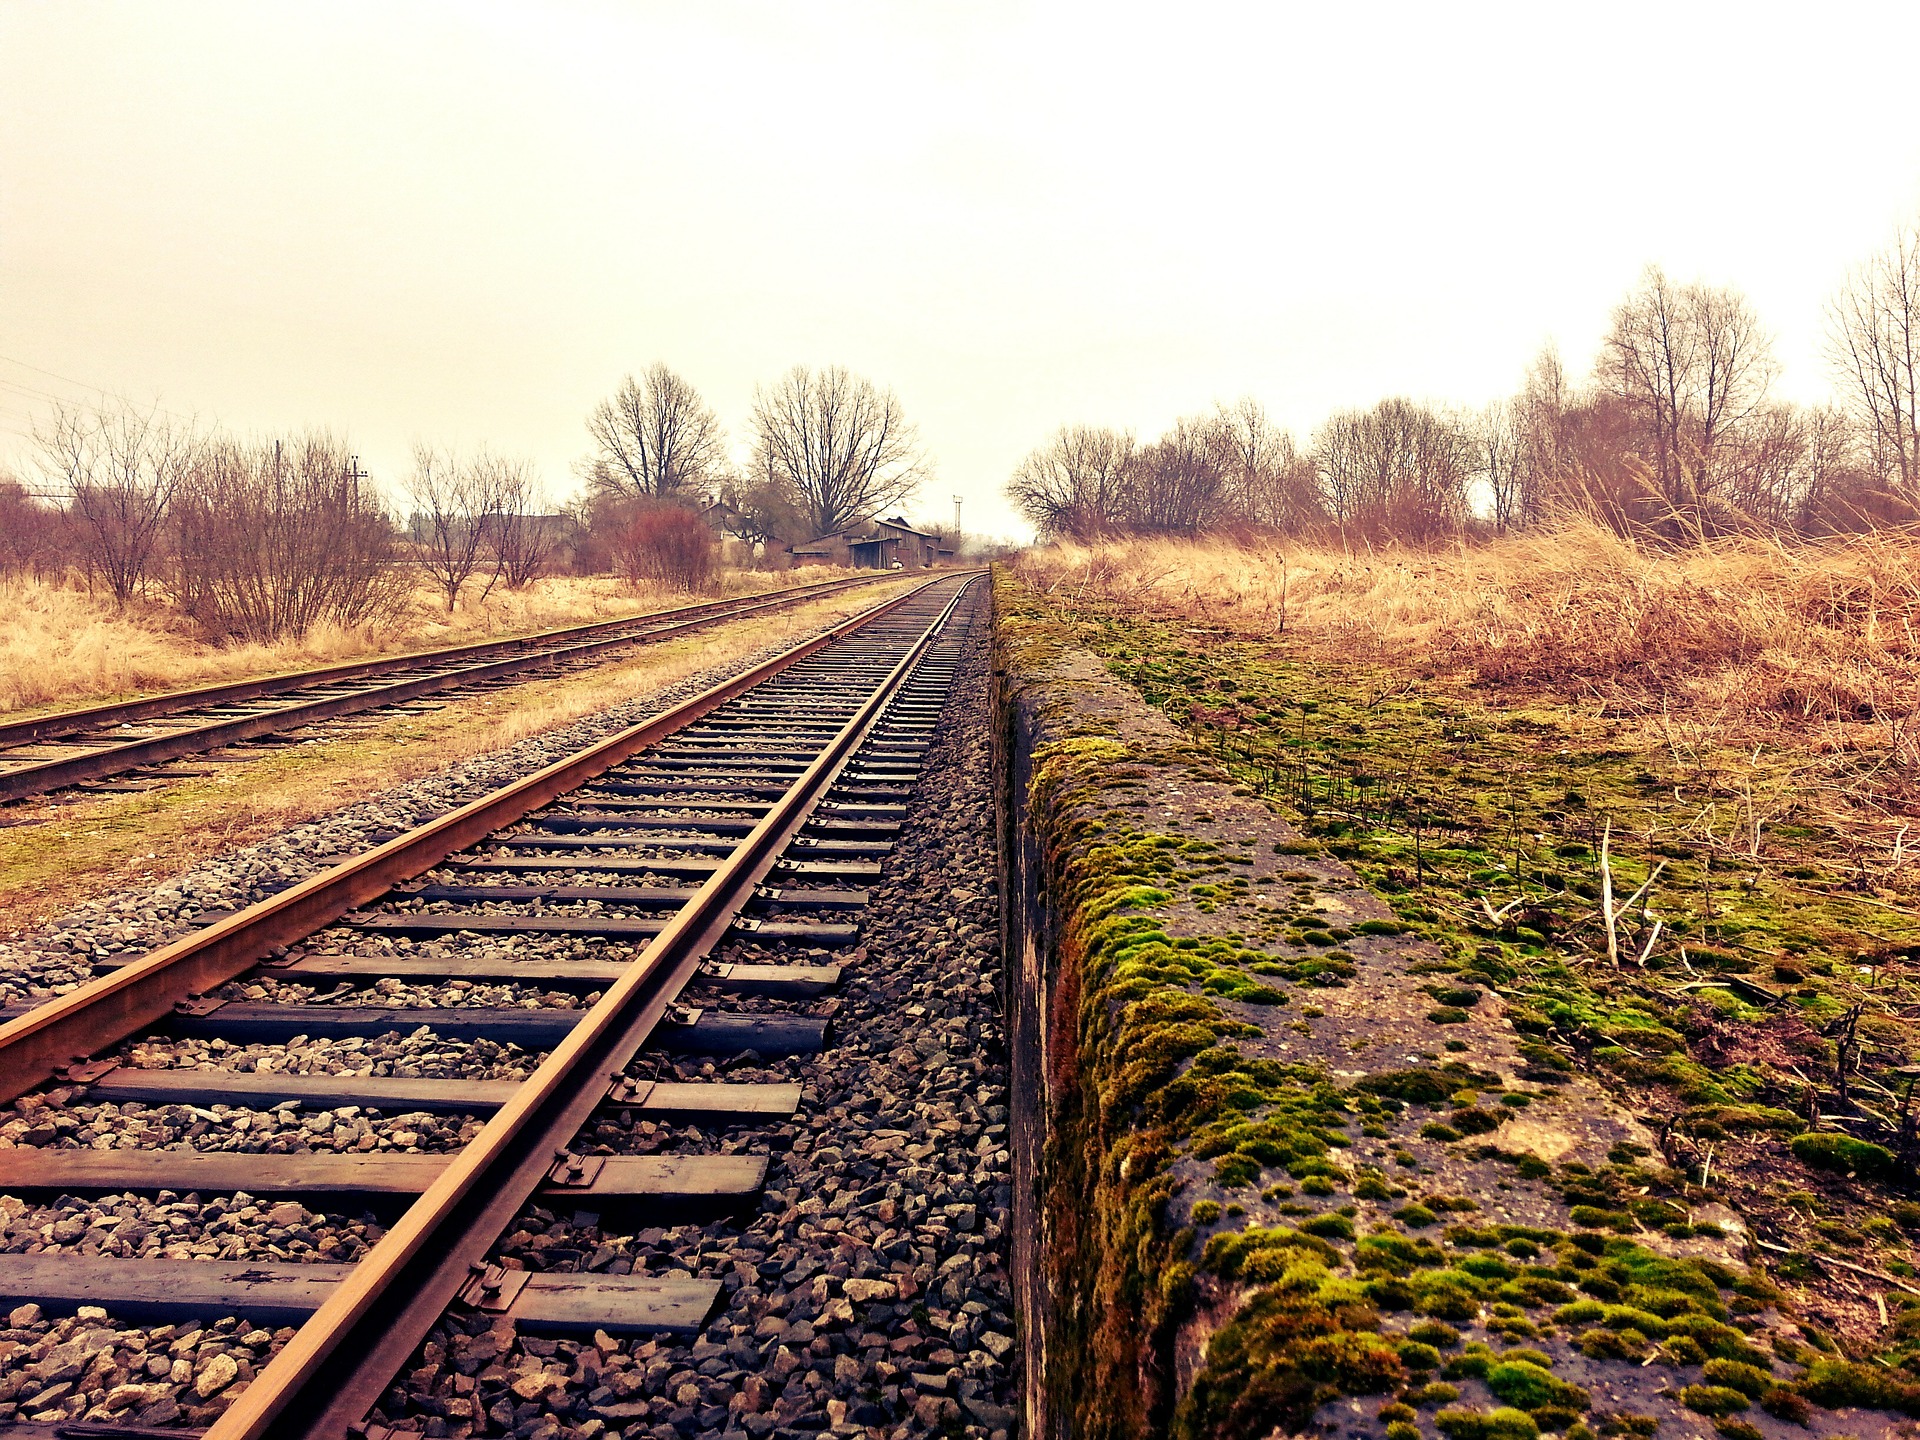 Train tracks. Photo by CodeCondo on Pixabay.